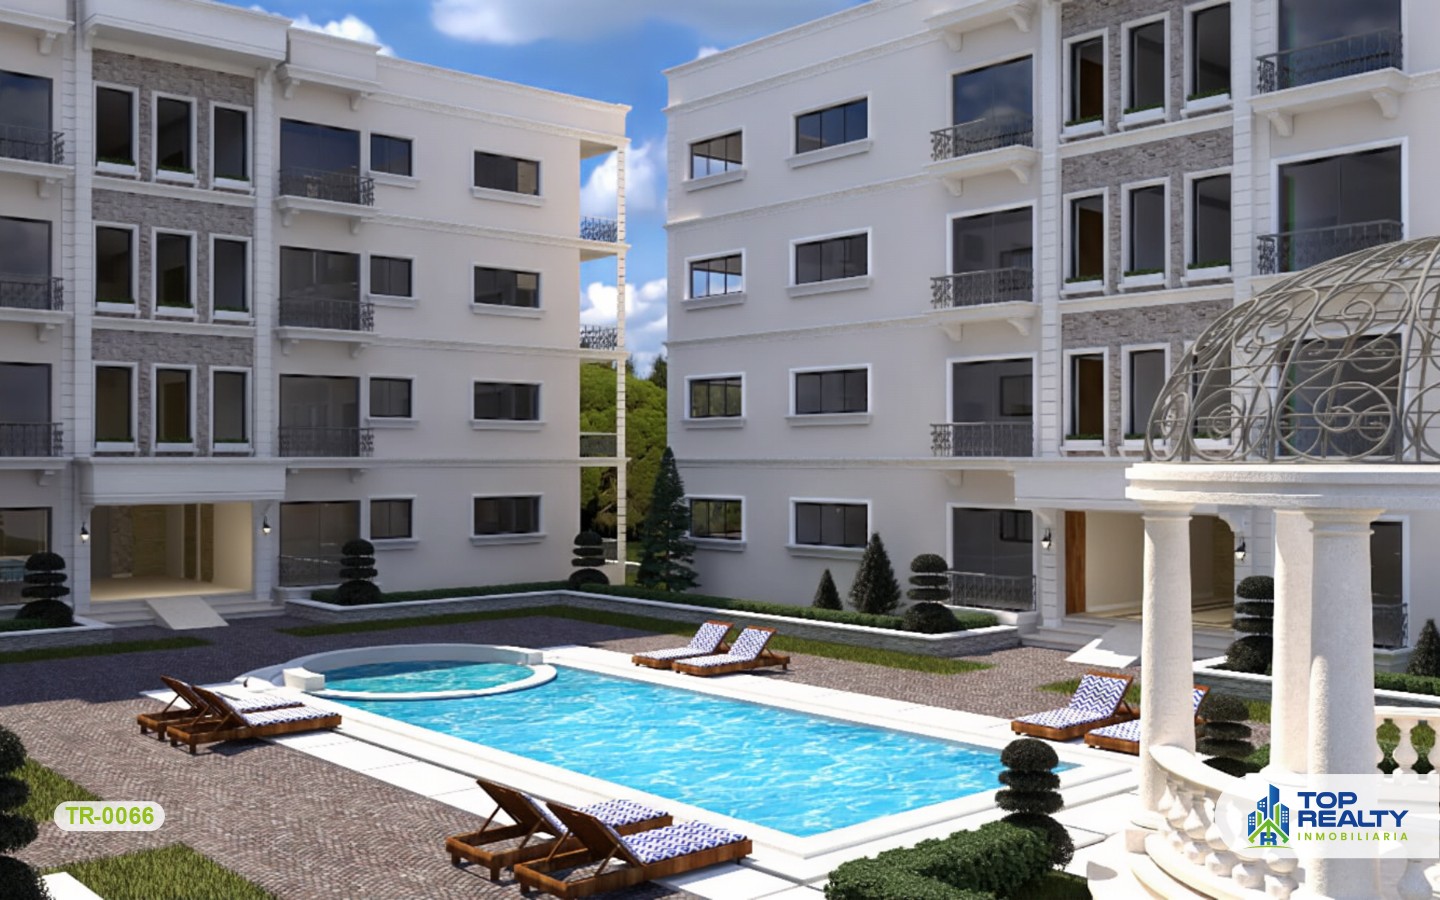 apartamentos - TR-0066: Revolucionario proyecto de estilo arquitectonico moderno en la Romana 1